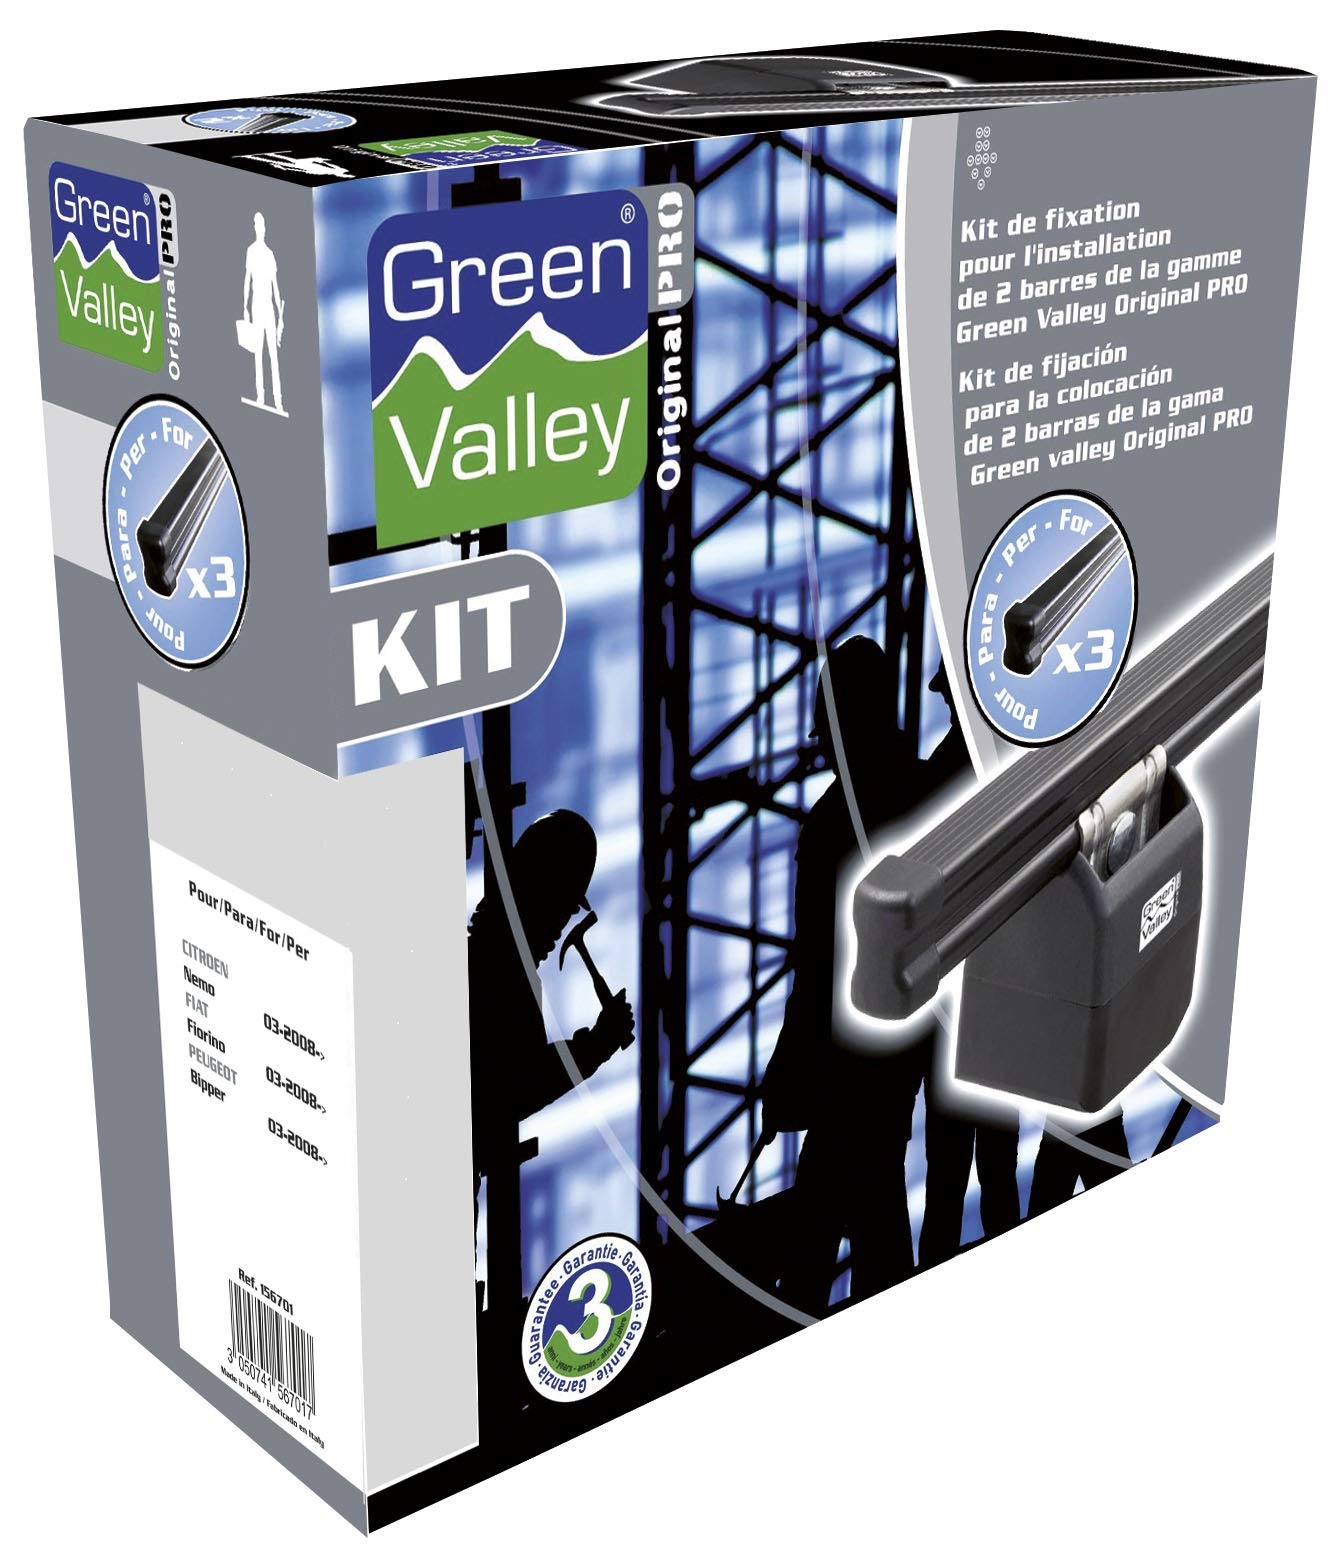 AURILIS Group - FLAURAUD Green Valley - Kit Stangen Original Pro Nr. 714 3 Stangen von Green Valley